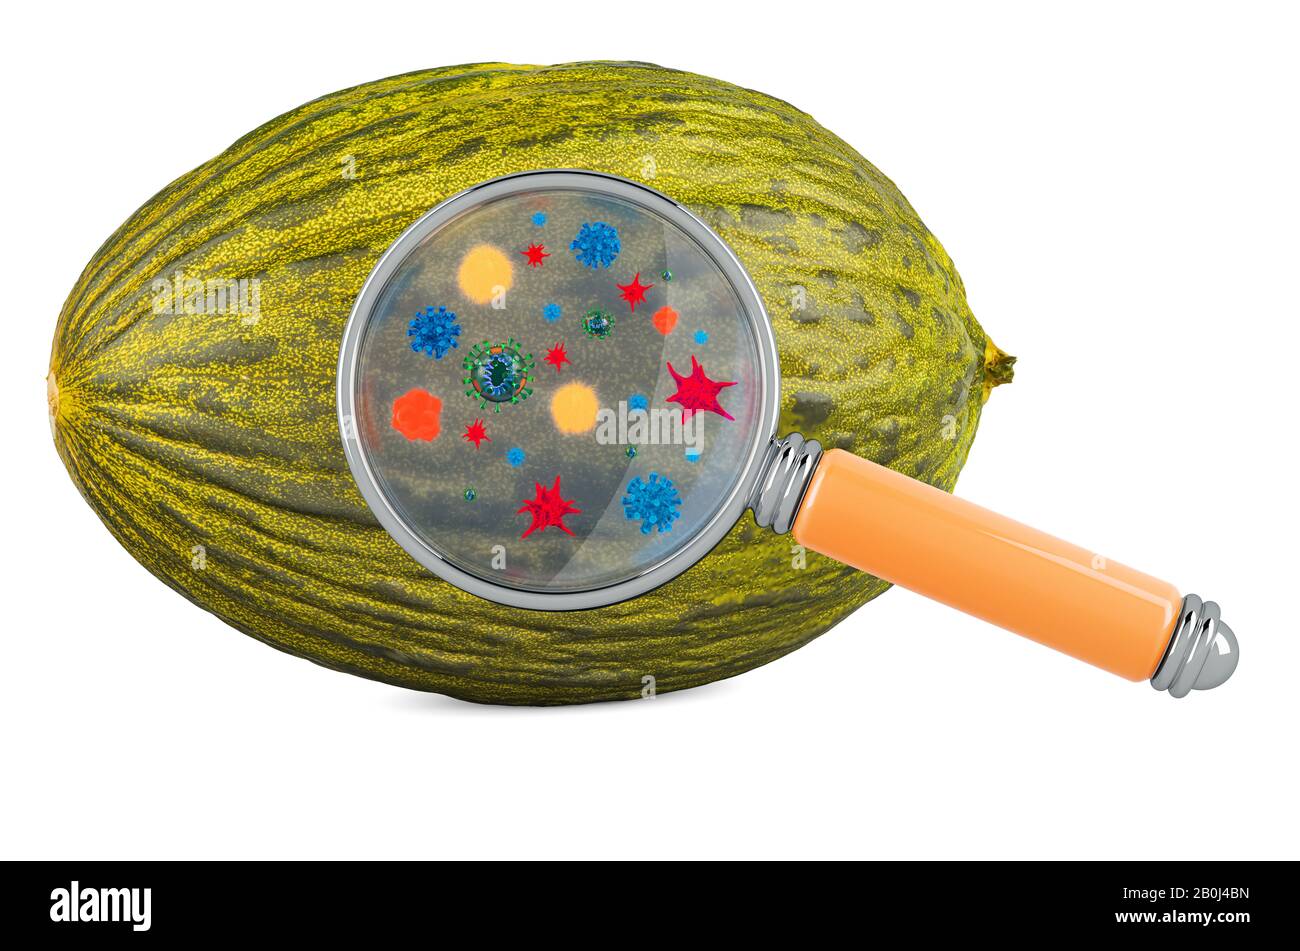 Melon de Noël avec germes, microbes ou virus sous loupe, rendu tridimensionnel isolé sur fond blanc Banque D'Images